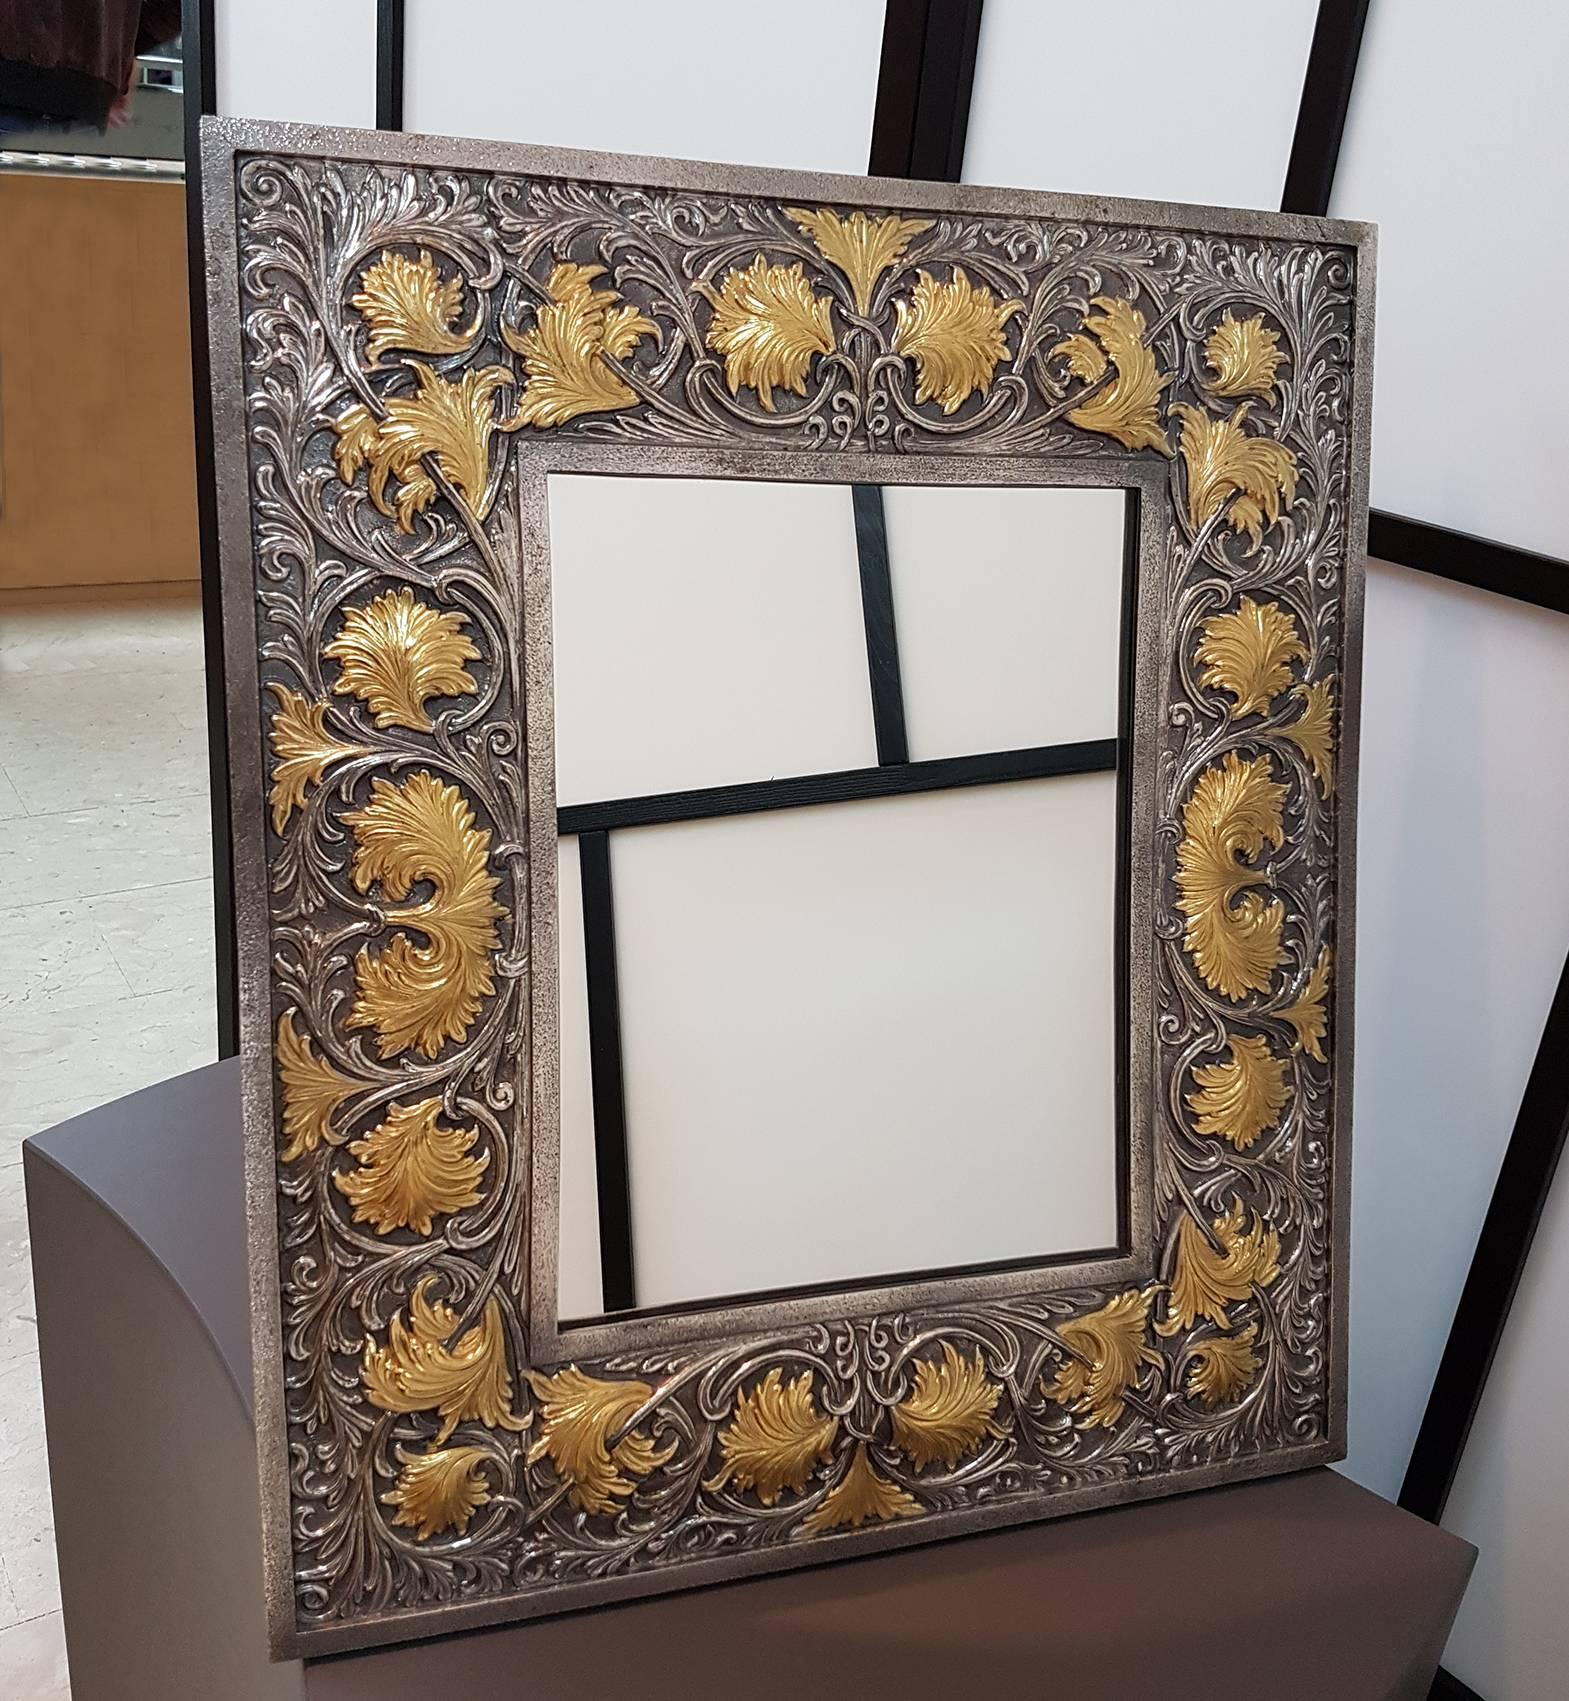 Miroir de table rectangulaire en argent sterling.
Le miroir est orné de feuilles et de volutes avec une finition dorée et brunie
Mesure : 2 500 grammes.